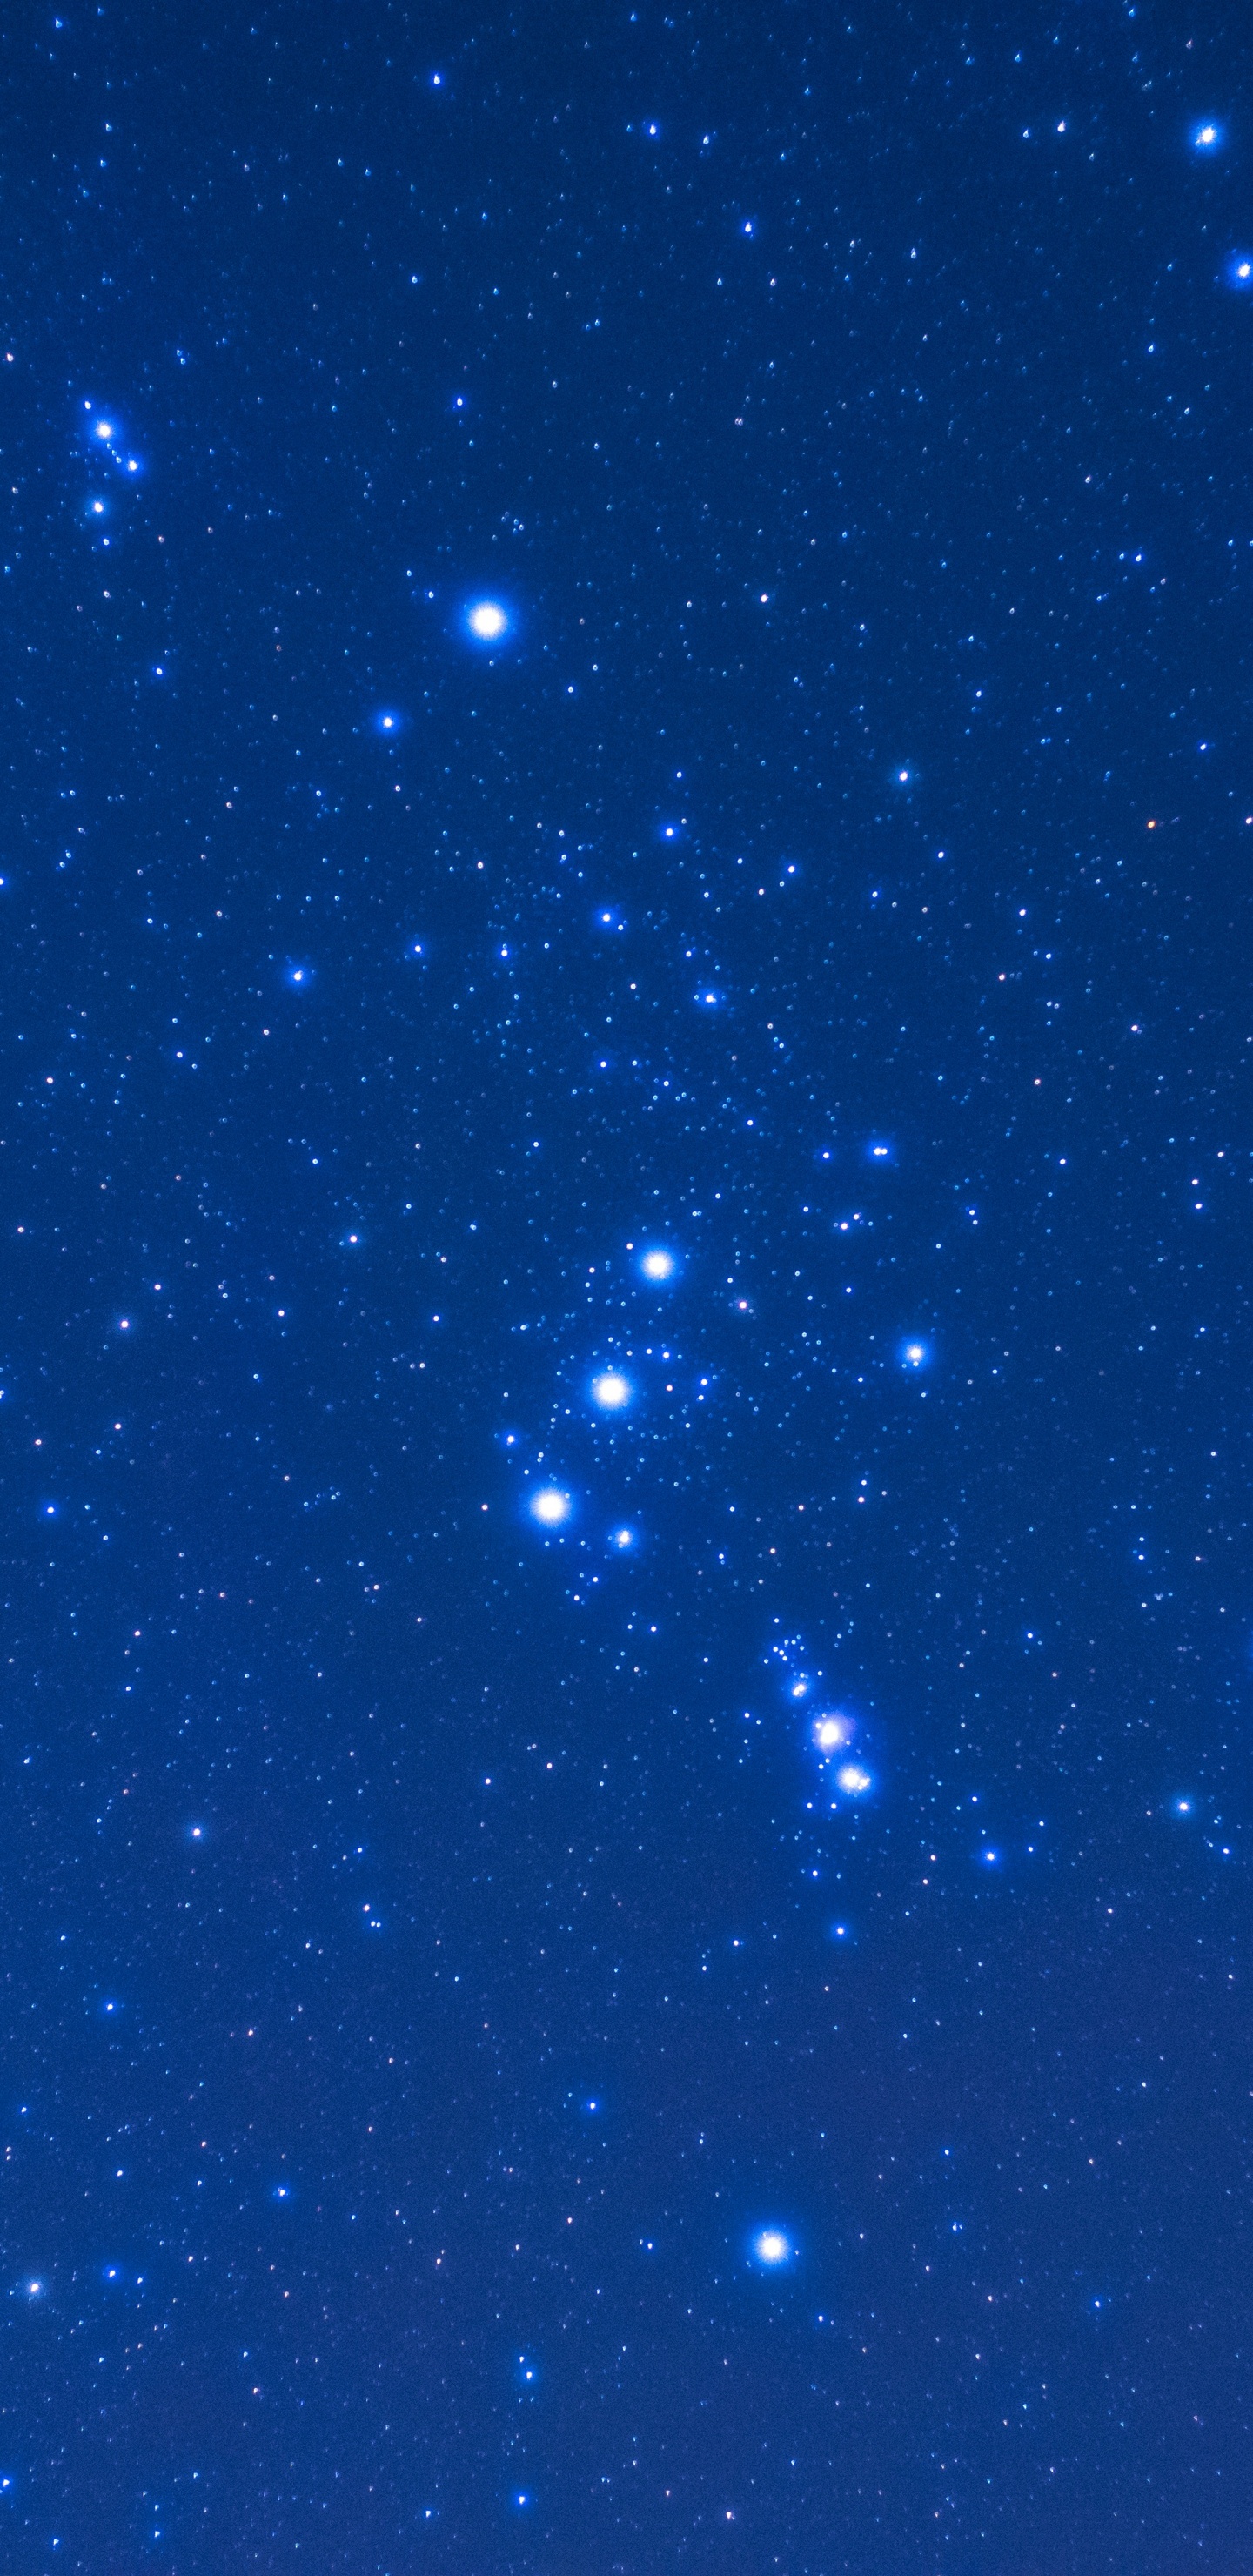 Étoiles Bleues et Blanches Dans le Ciel Bleu. Wallpaper in 1440x2960 Resolution